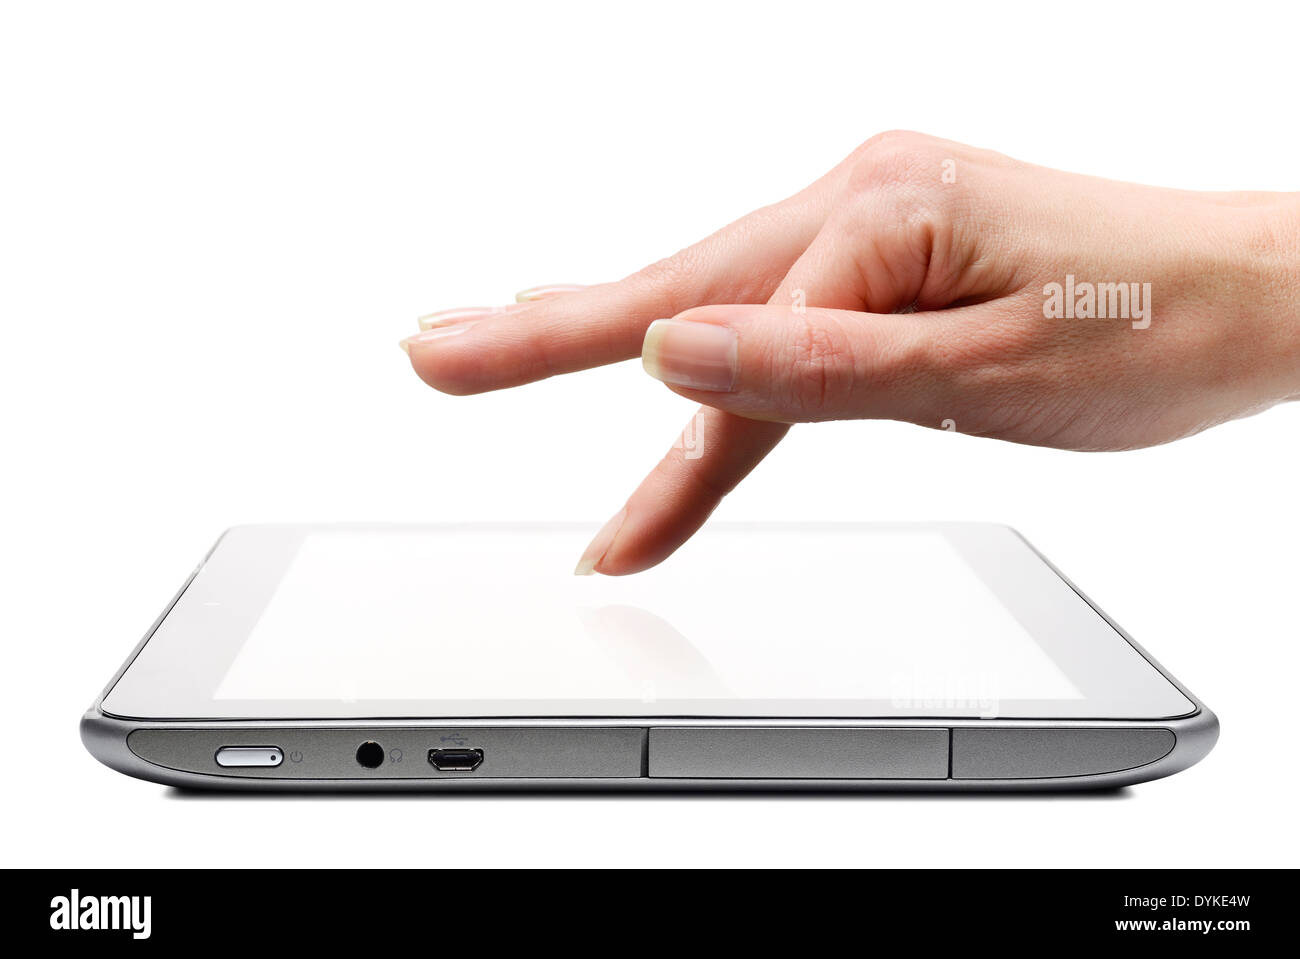 Tablet-App wird durch einen Finger auf dem Touchscreen ausgewählt, ausgeschnitten, Nahaufnahme. Stockfoto